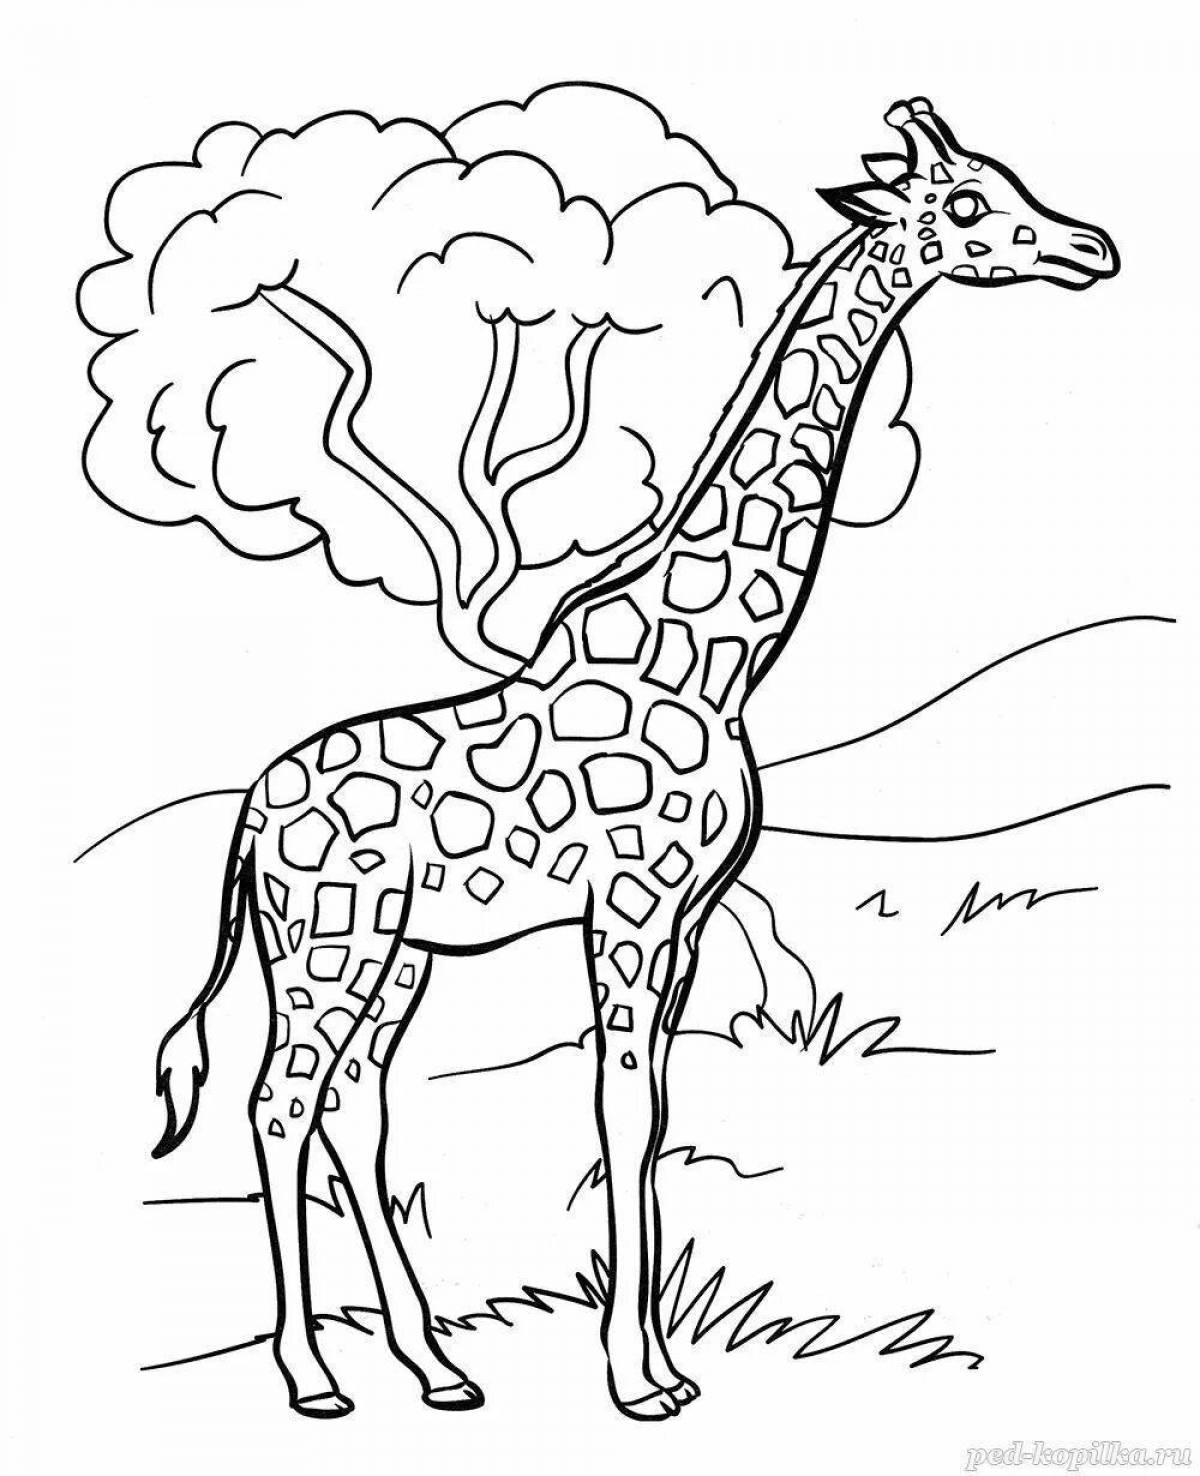 Раскраска для дошкольников животные. Жираф. Раскраска. Раскраски животных для детей. Жираф раскраска для малышей. Раскраска жирафа для детей.